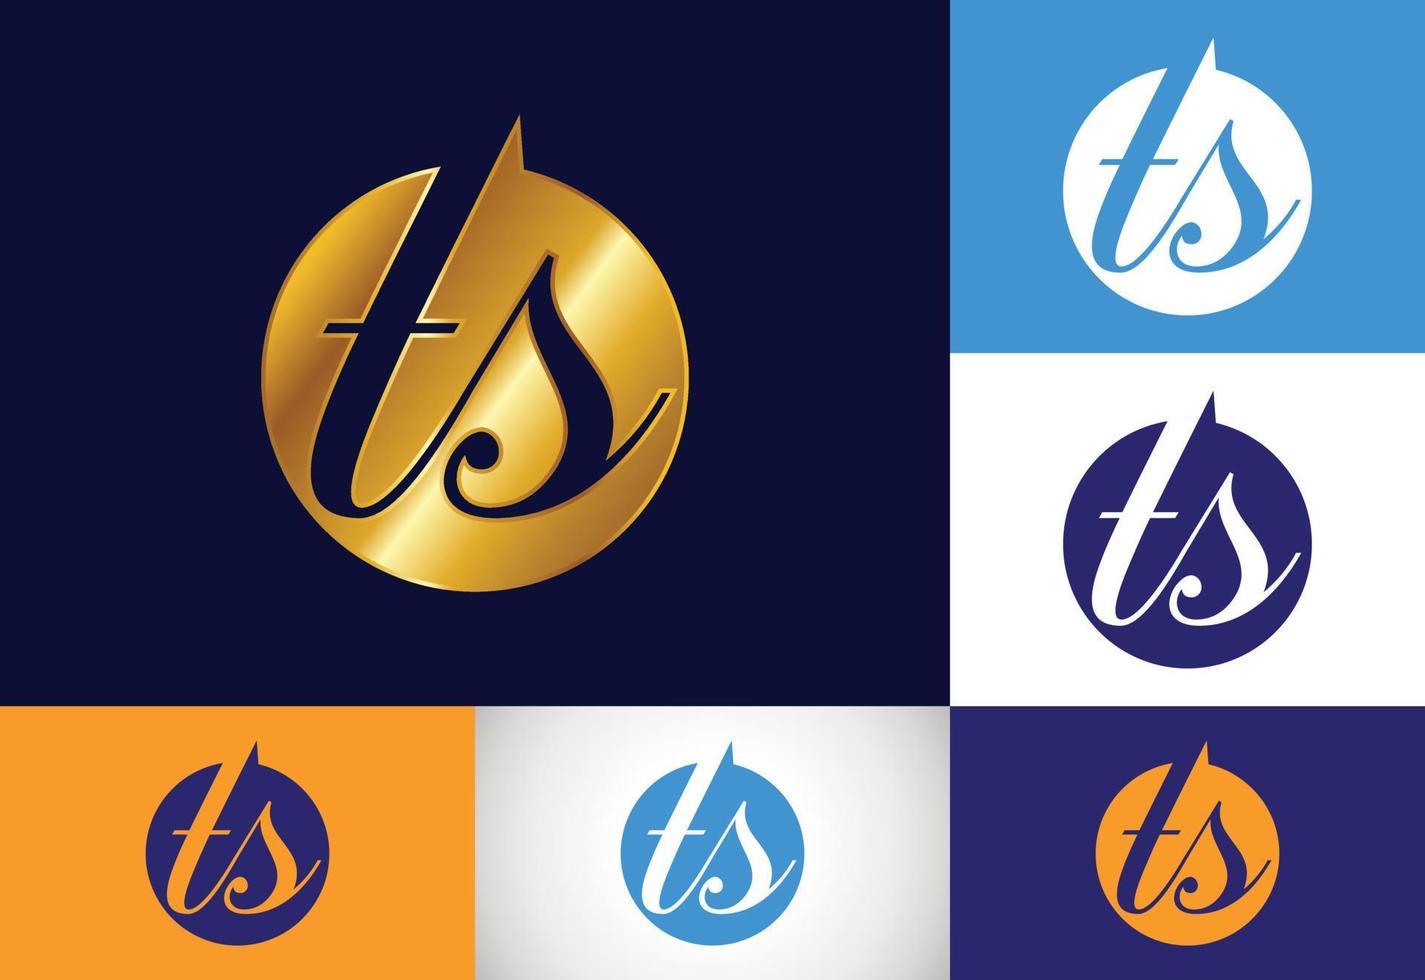 vecteur de conception de logo lettre initiale ts. symbole de l'alphabet graphique pour l'identité de l'entreprise